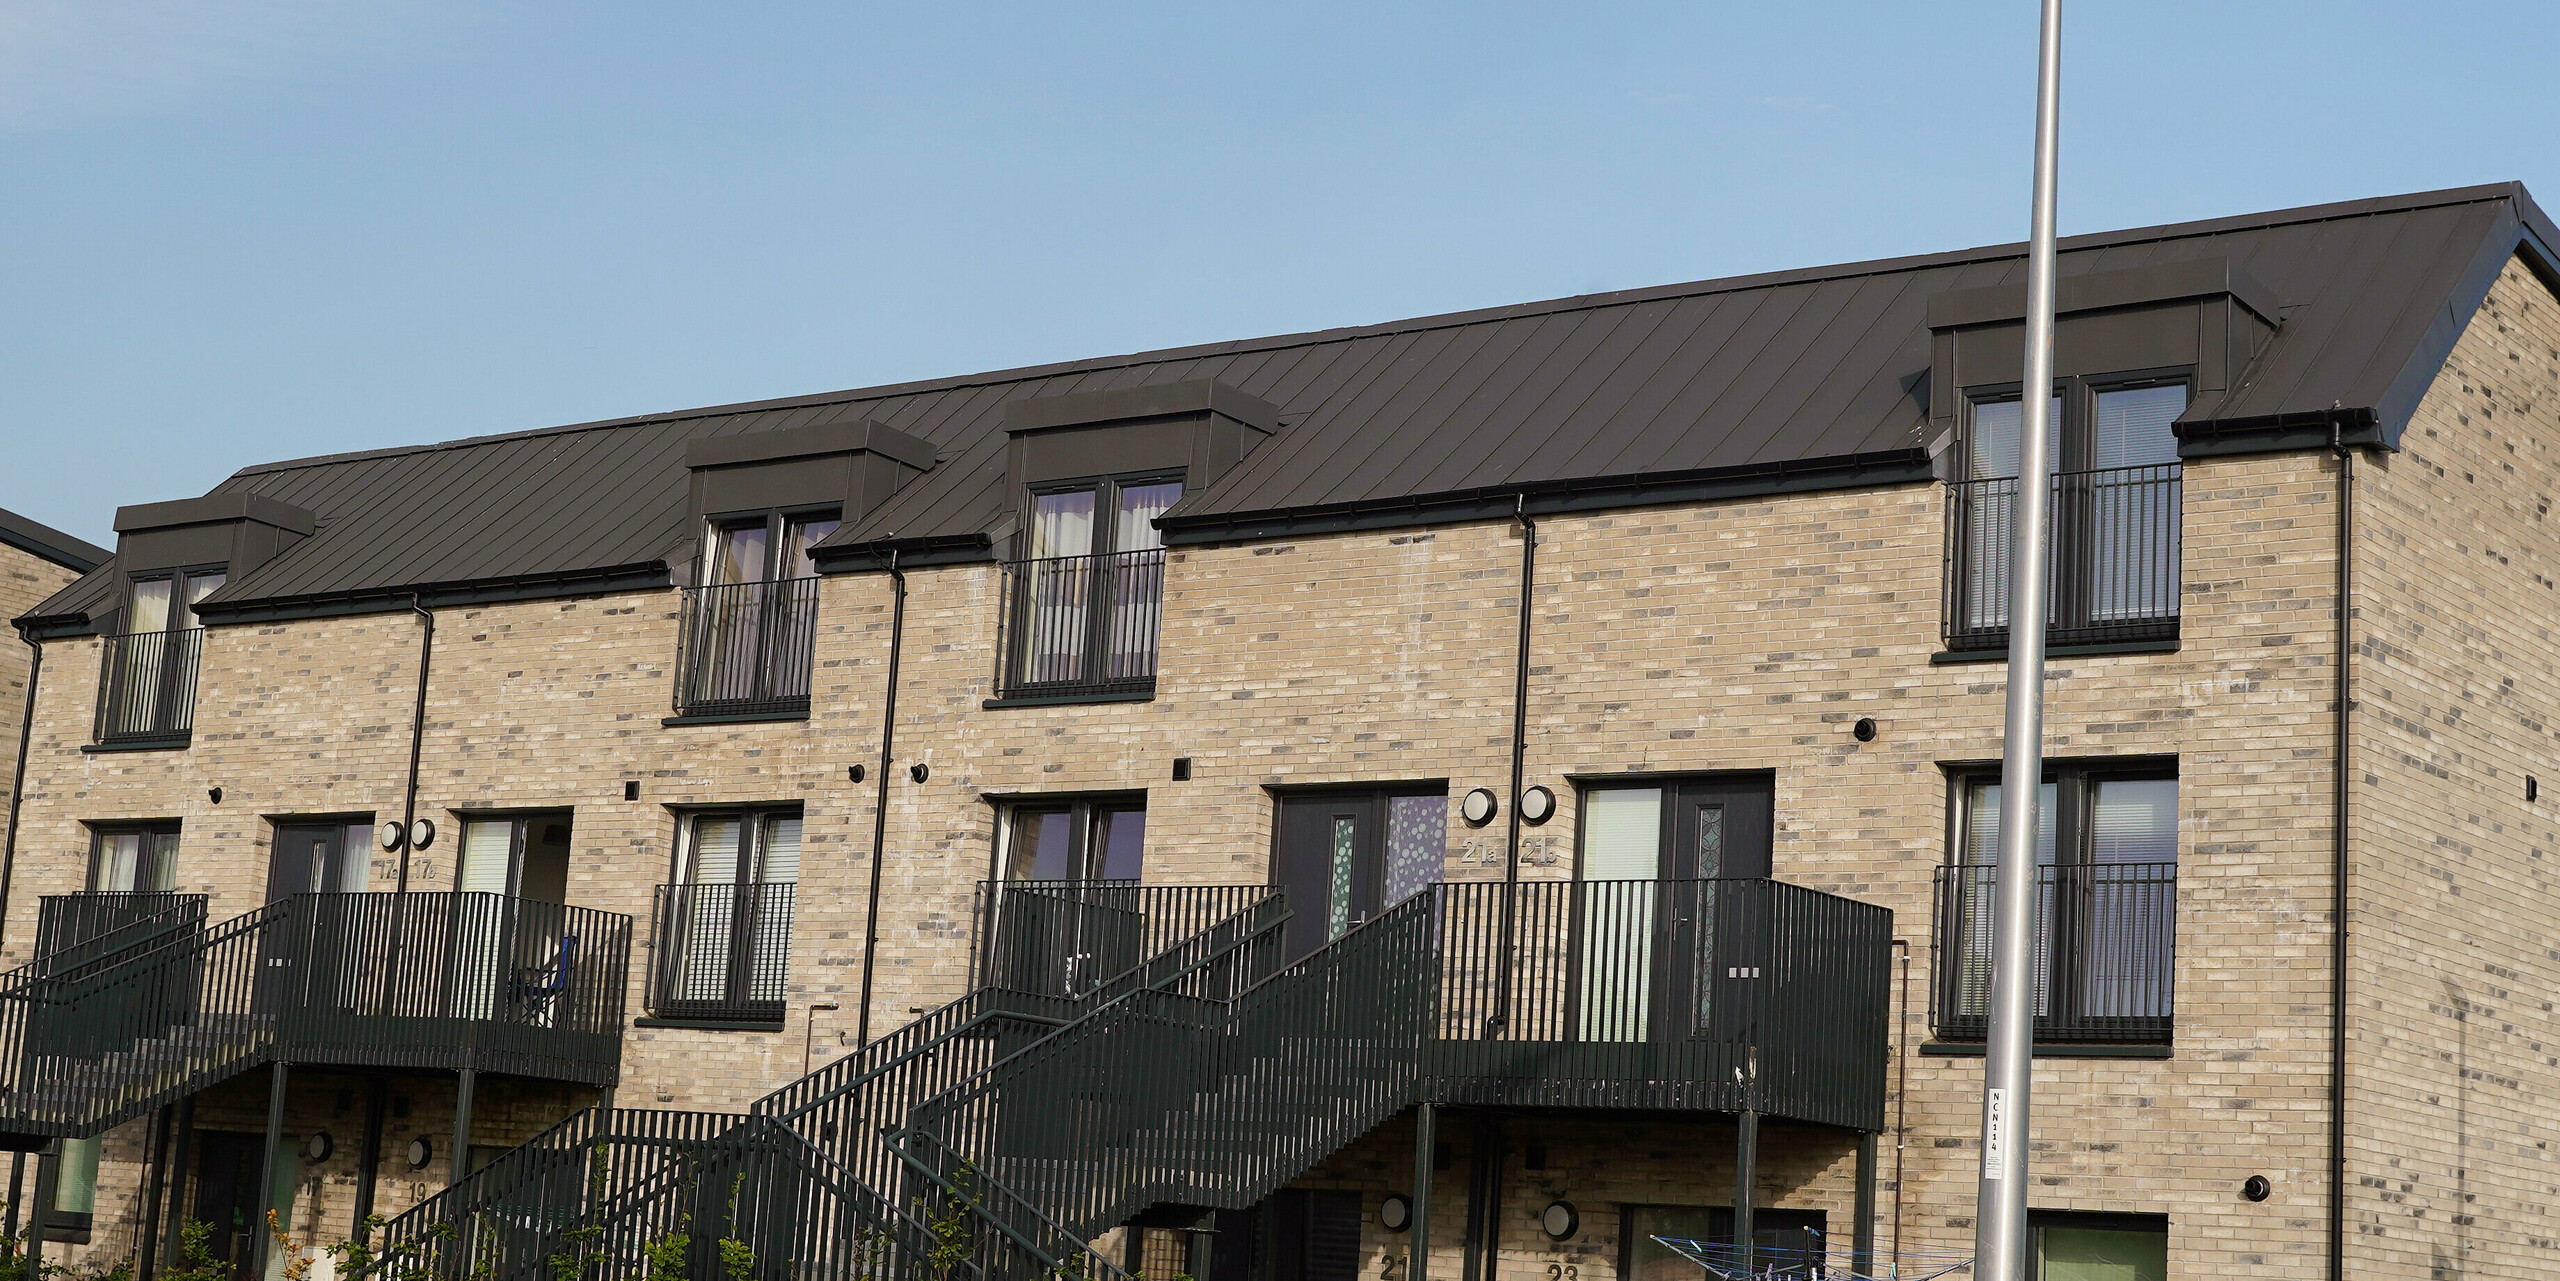 Detailansicht einer modernen Wohnhausanlage in Edinburgh, Schottland, mit einer hochwertigen PREFALZ Dacheindeckung in P.10 Dunkelgrau. Die langlebigen Aluminiumdächer von PREFA bieten eine optimale Kombination aus Funktionalität und ästhetischem Design, das sich nahtlos in die städtische Architektur integriert. Die sichtbare Materialqualität und präzise Verarbeitung der PREFALZ Produkte tragen zur Wertsteigerung der Immobilie bei und unterstreichen die Nachhaltigkeit moderner Bauprojekte. Als Gegenstück zum zeitgemäßen Dach ziert das Bauwerk eine traditionelle Backsteinfassade.